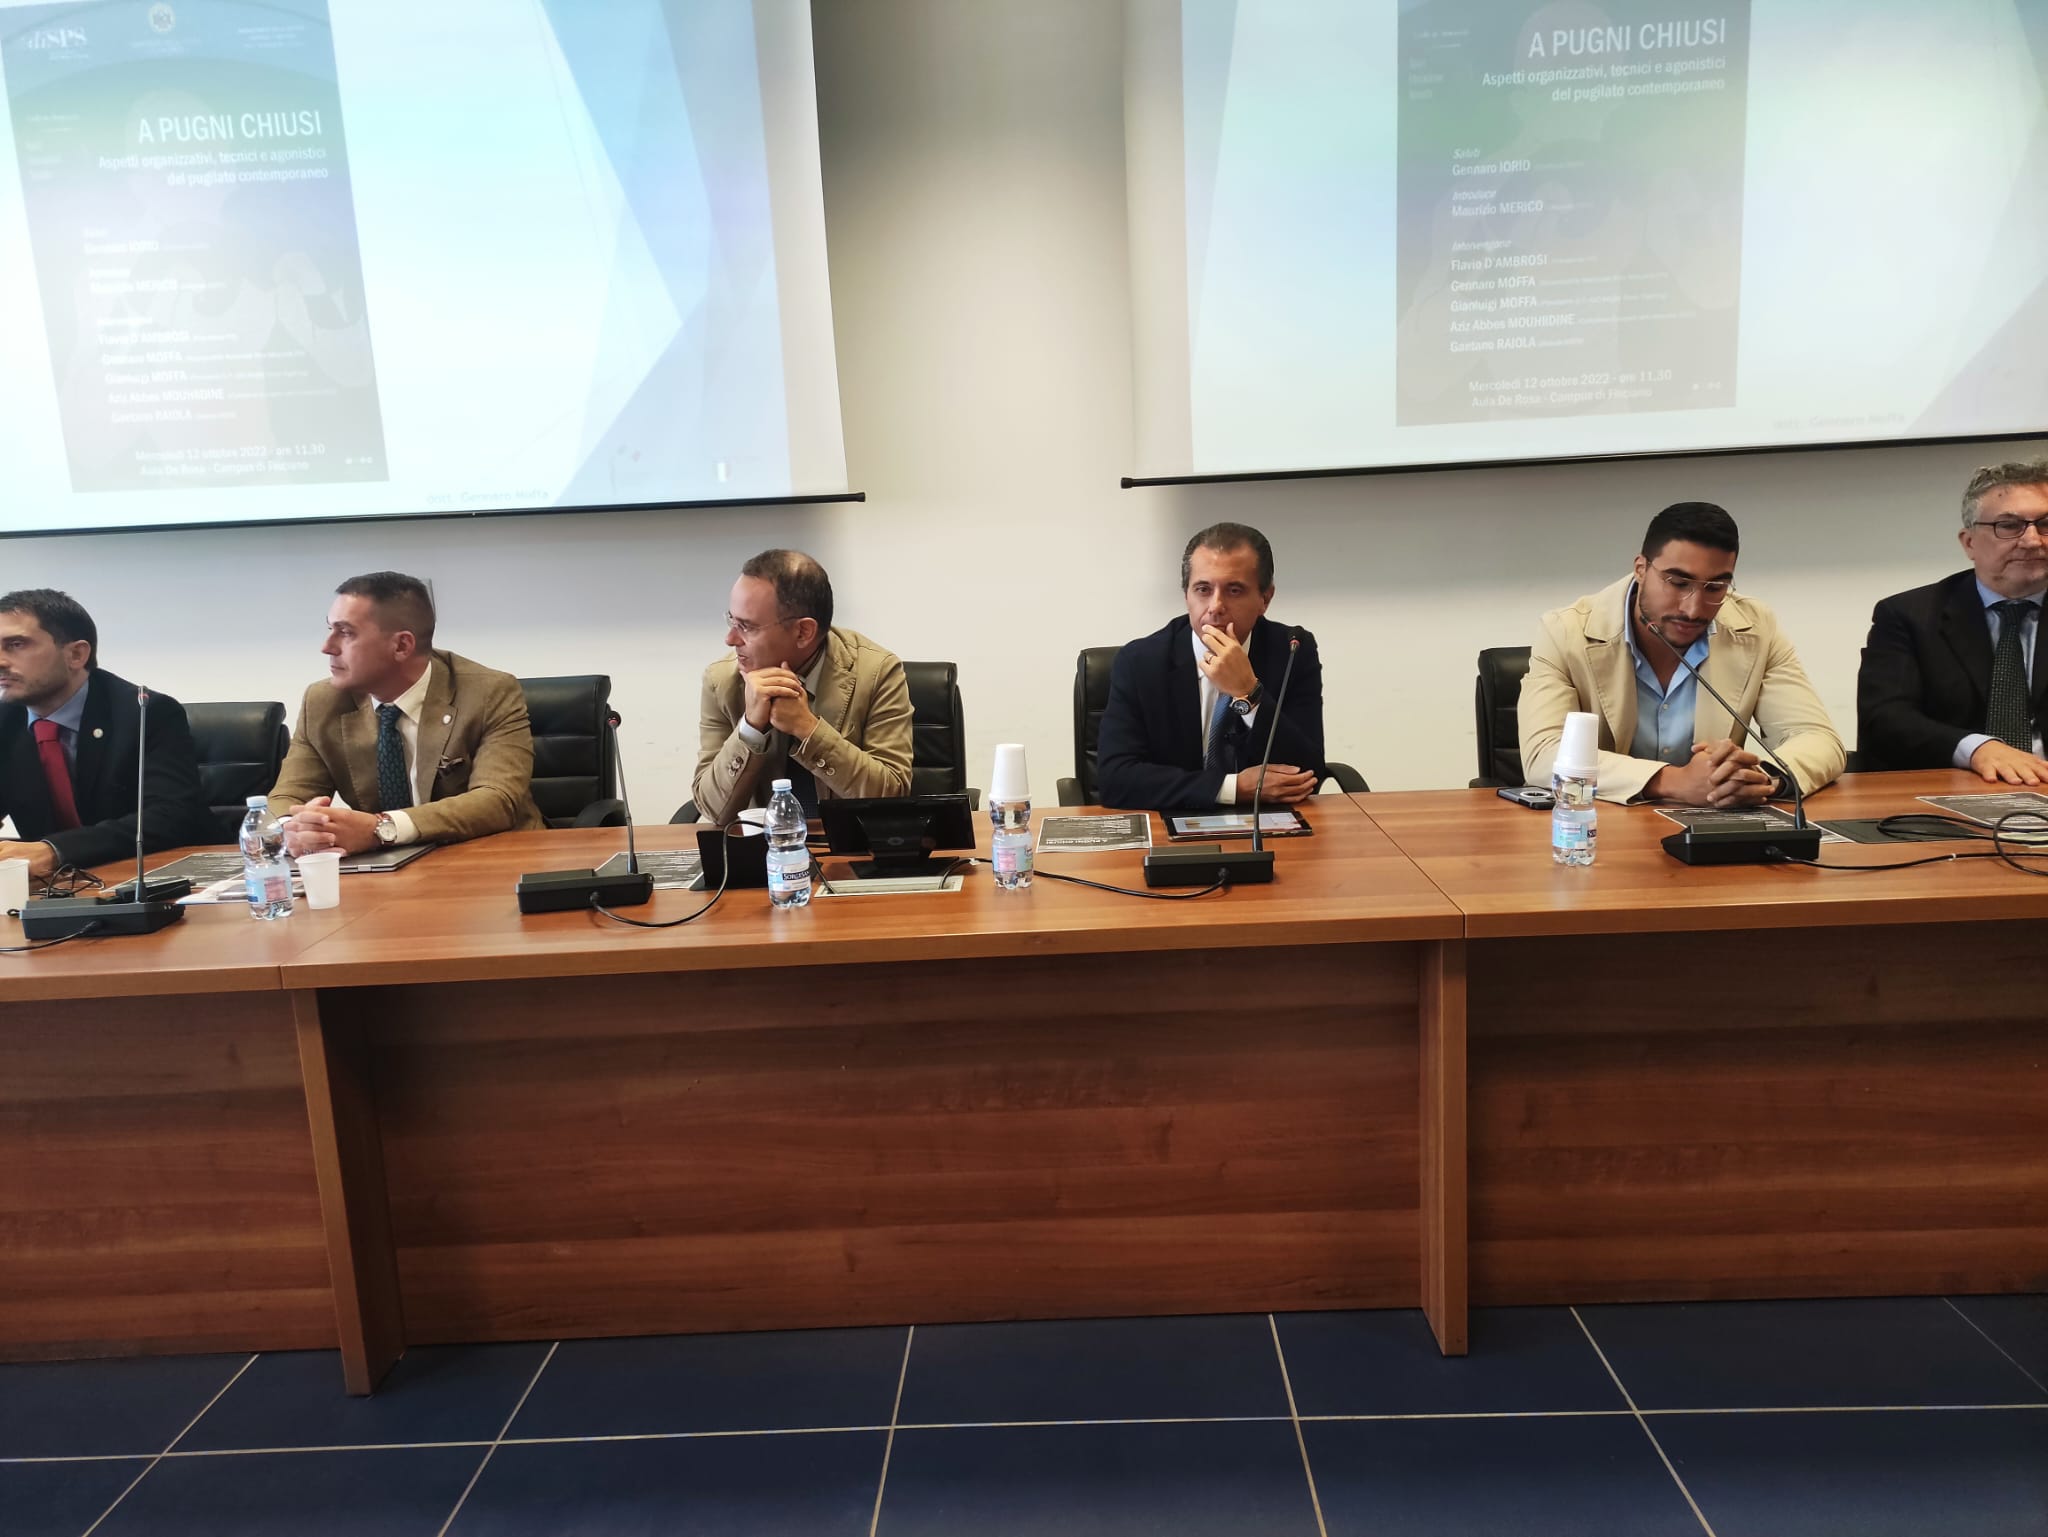 A Salerno il convegno "A Pugni Chiusi - Aspetti organizzativi, tecnici e agonistici del pugilato contemporaneo" - Presente anche il Presidente FPI D'Ambrosi 